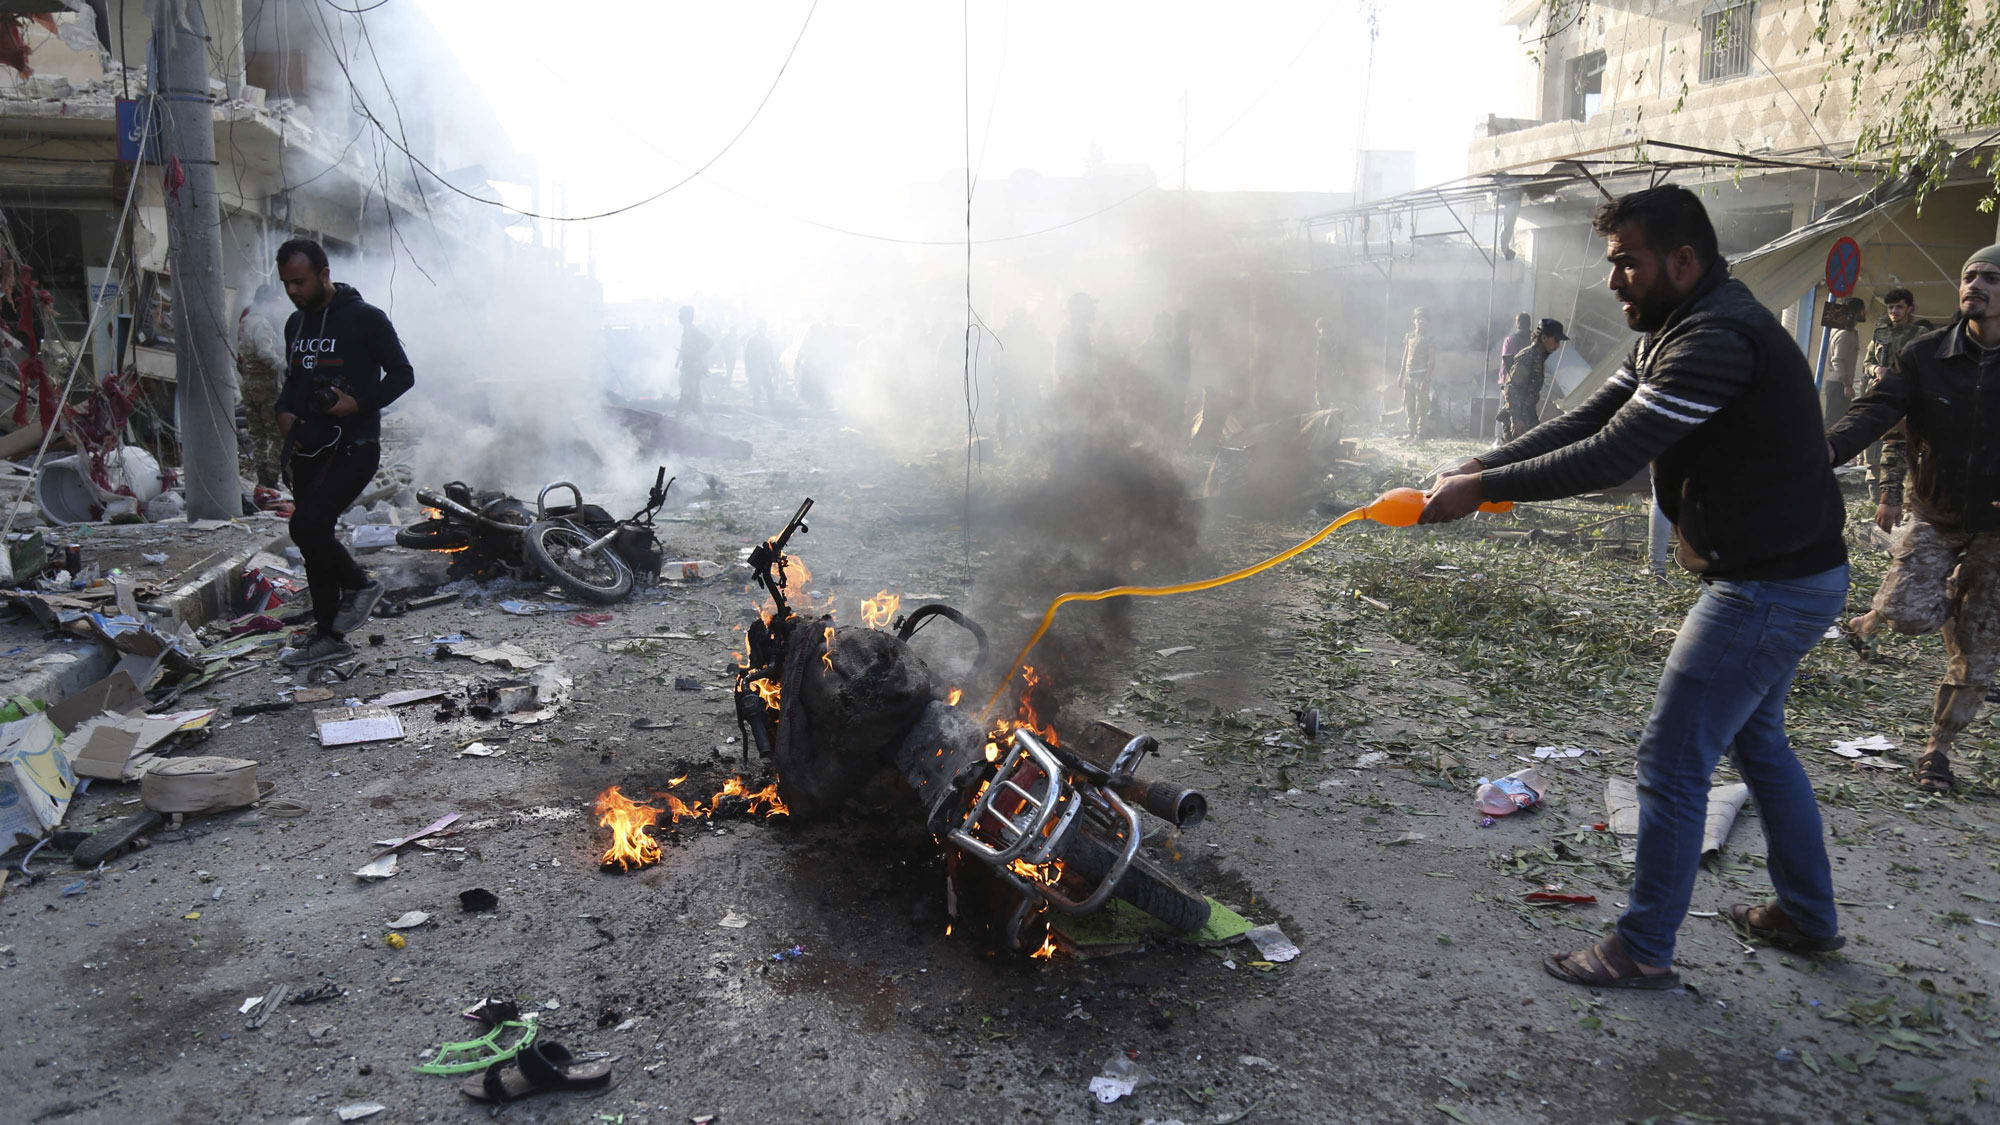 انفجار سيارة مفخخة في سوق بتل أبيض خلف أضرار جسيمة والمزيد من القتلى المدنيين والفصائل الموالية لأنقرة